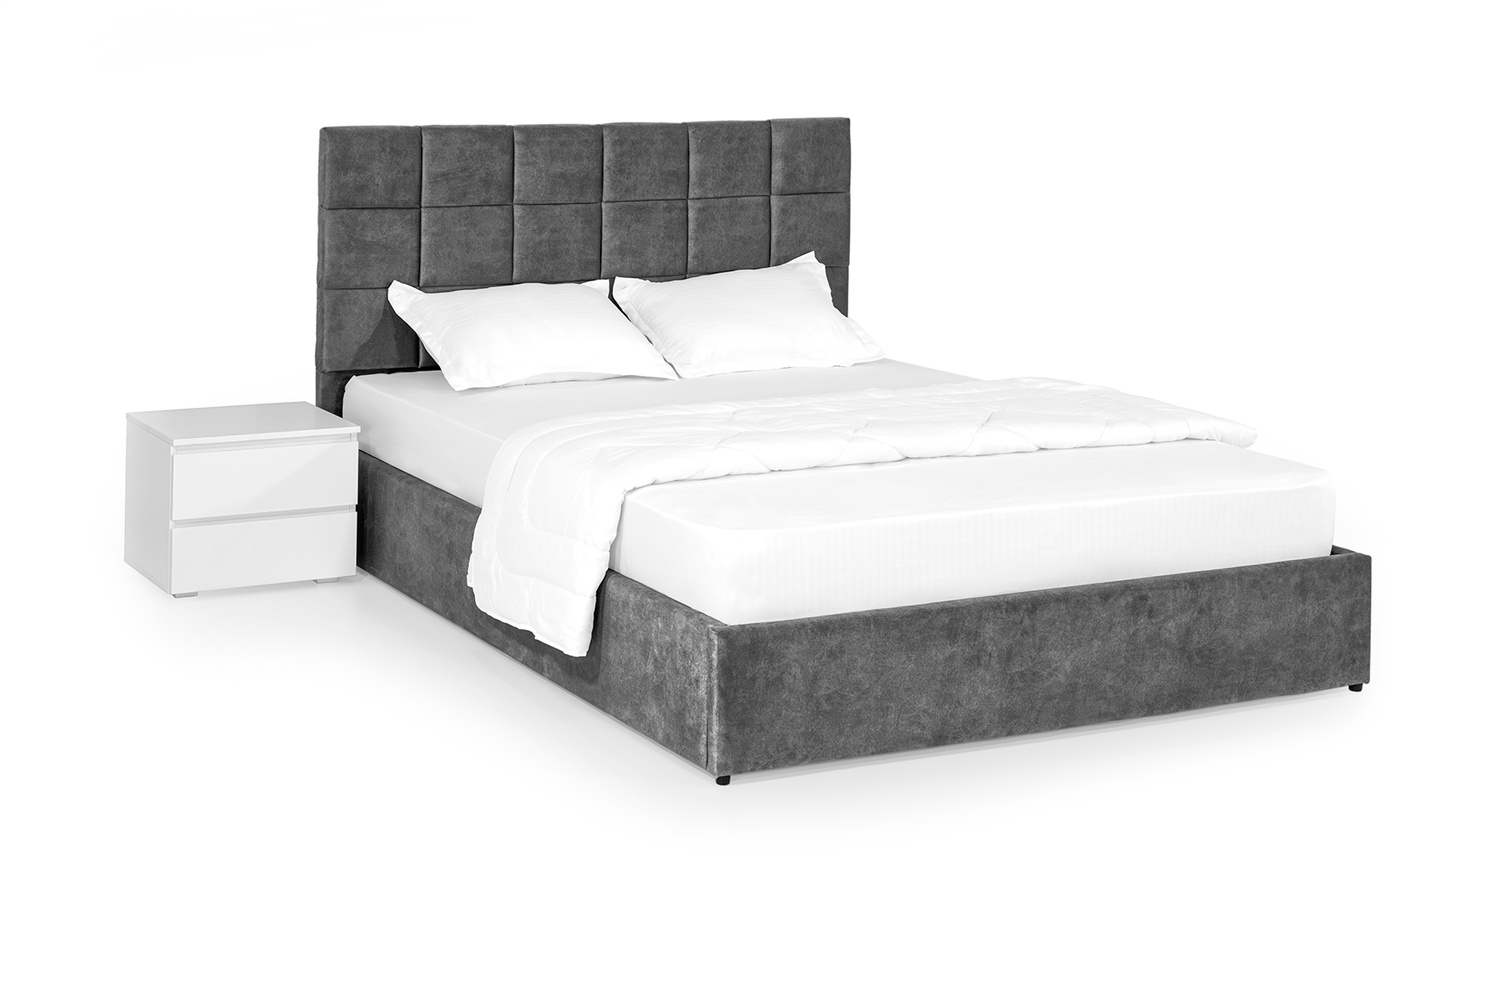 Кровать Астра 160х190 (Темно-серый, велюр, подъемный механизм, ниша) IMI str160x190tsp фото